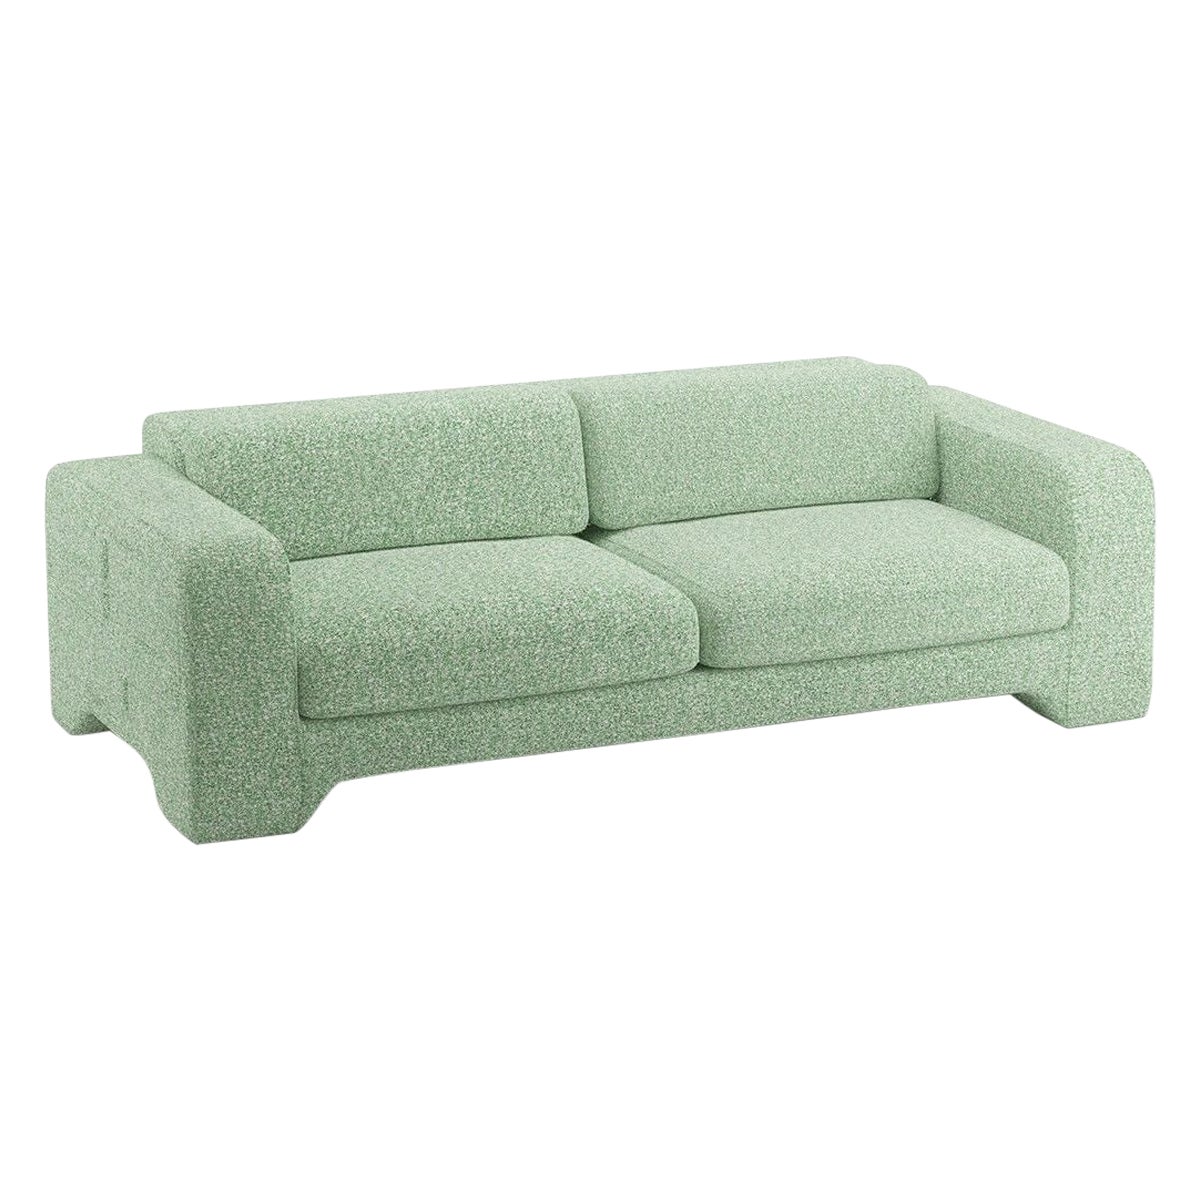 Popus Editions Giovanna 3 Seater Sofa in Grass Zanzi Linen Fabric